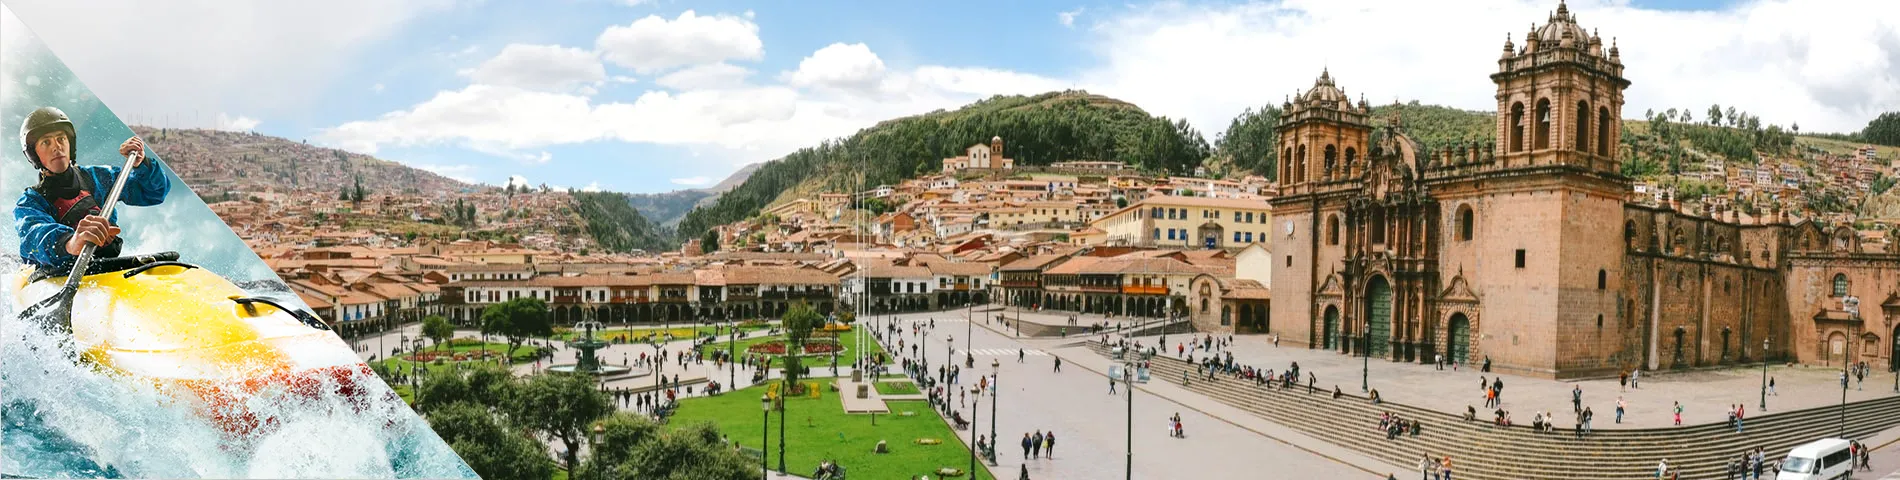 Cuzco - Espanyol i Esports d\'aventura